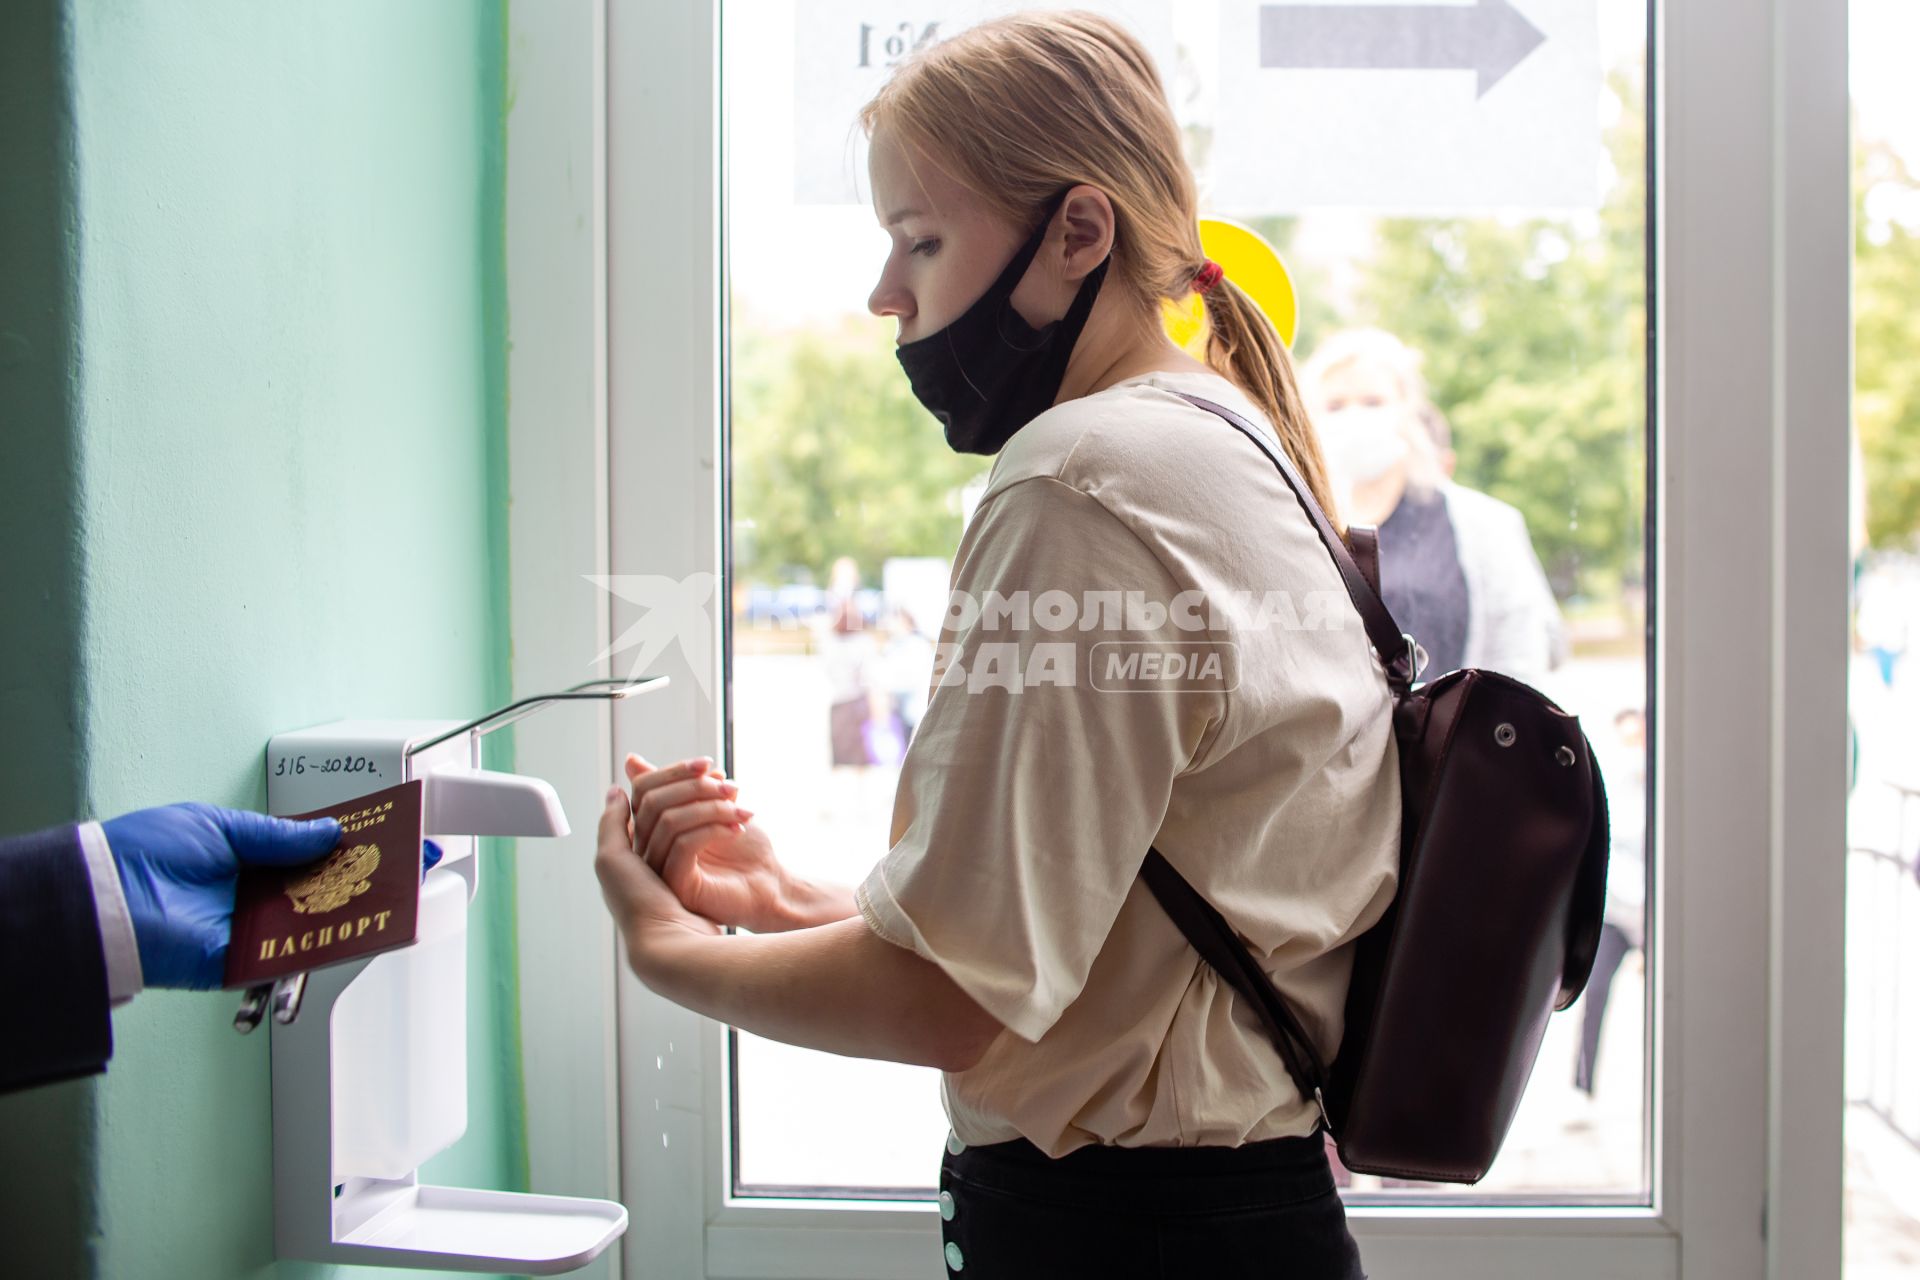 Челябинск. Девушка дезинфицирует руки перед началом единого государственного экзамена (ЕГЭ) в  школе.